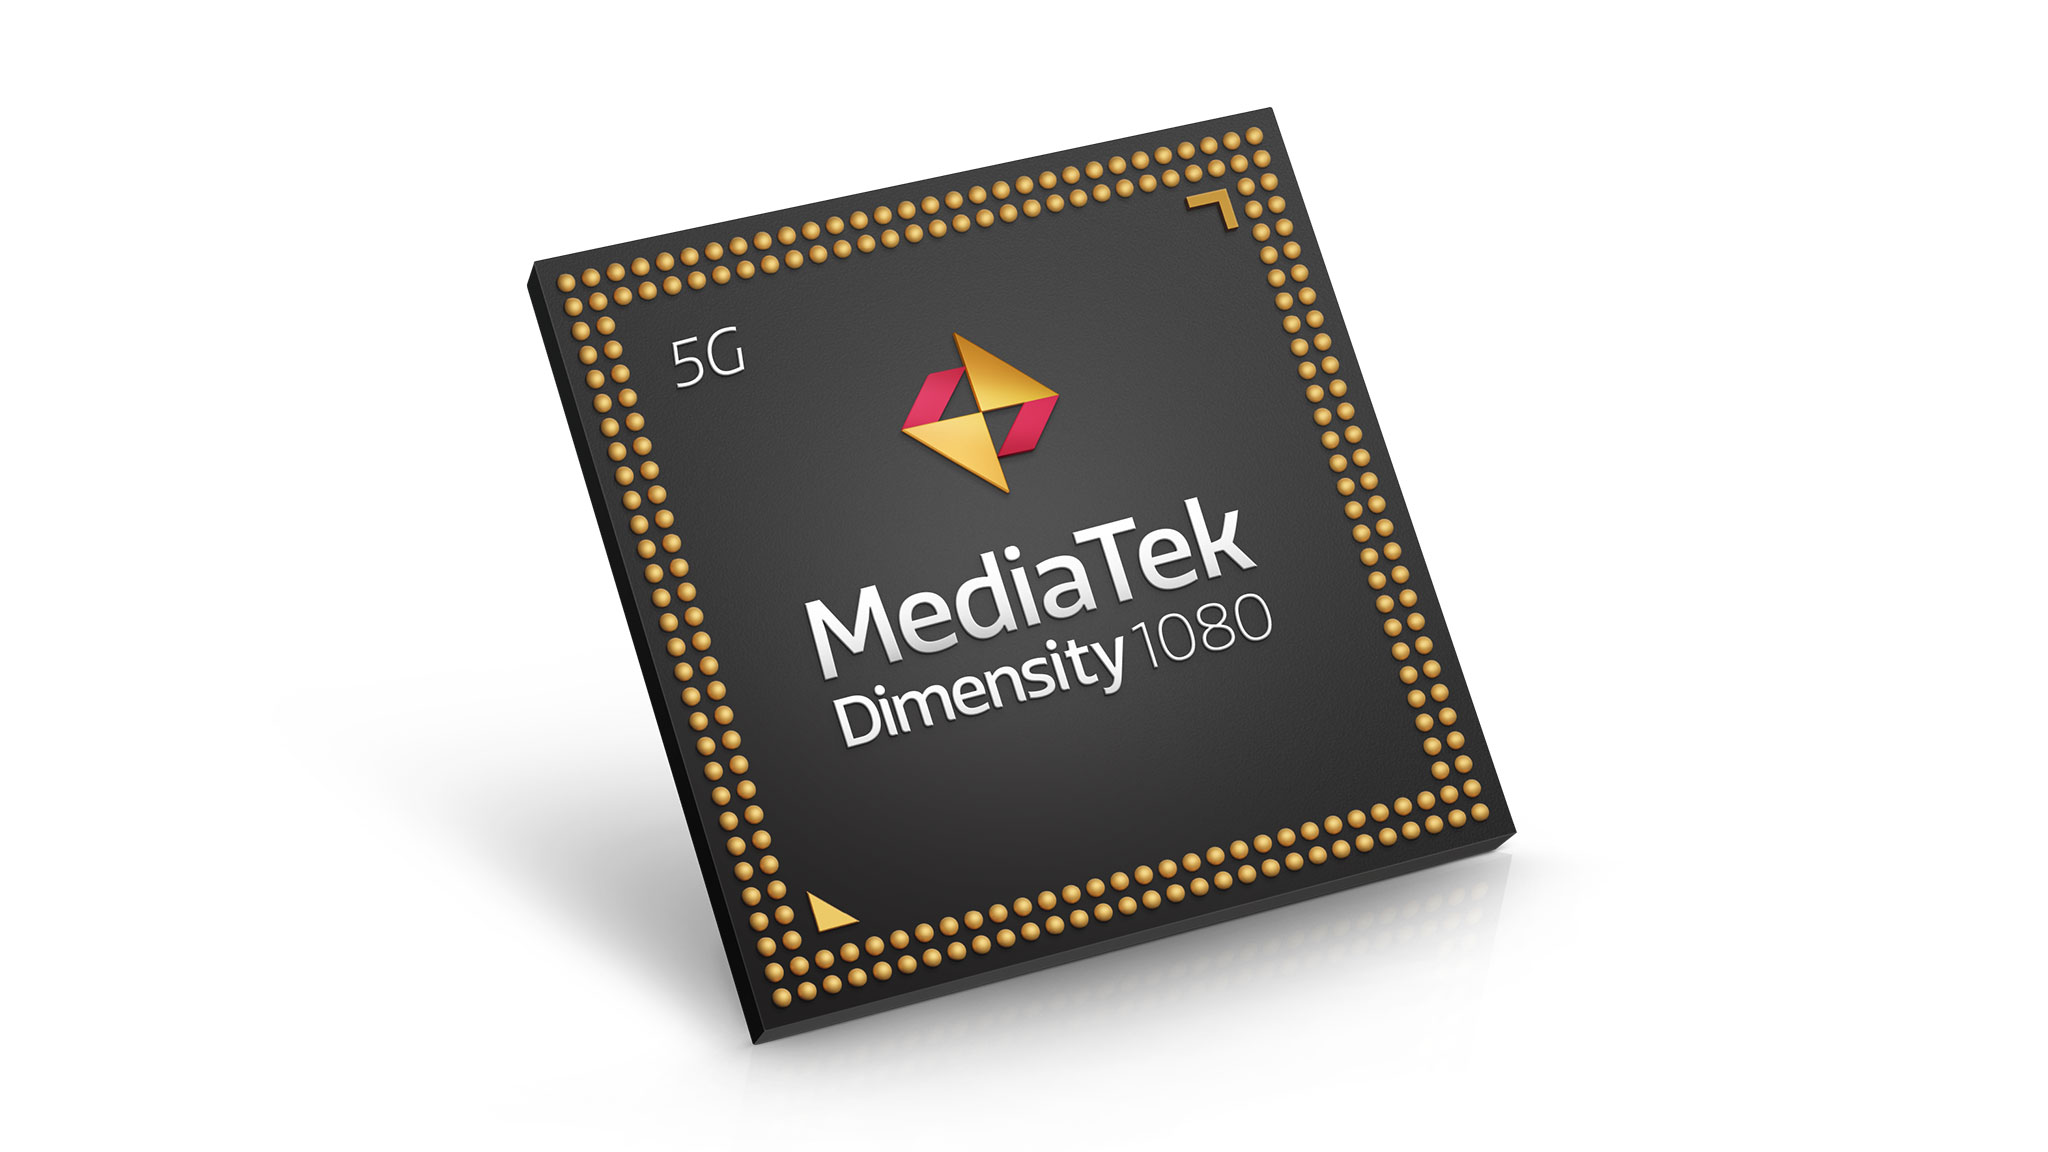 Chip mới MediaTek Dimensity 1080 tăng cường hiệu suất cho smartphone 5G